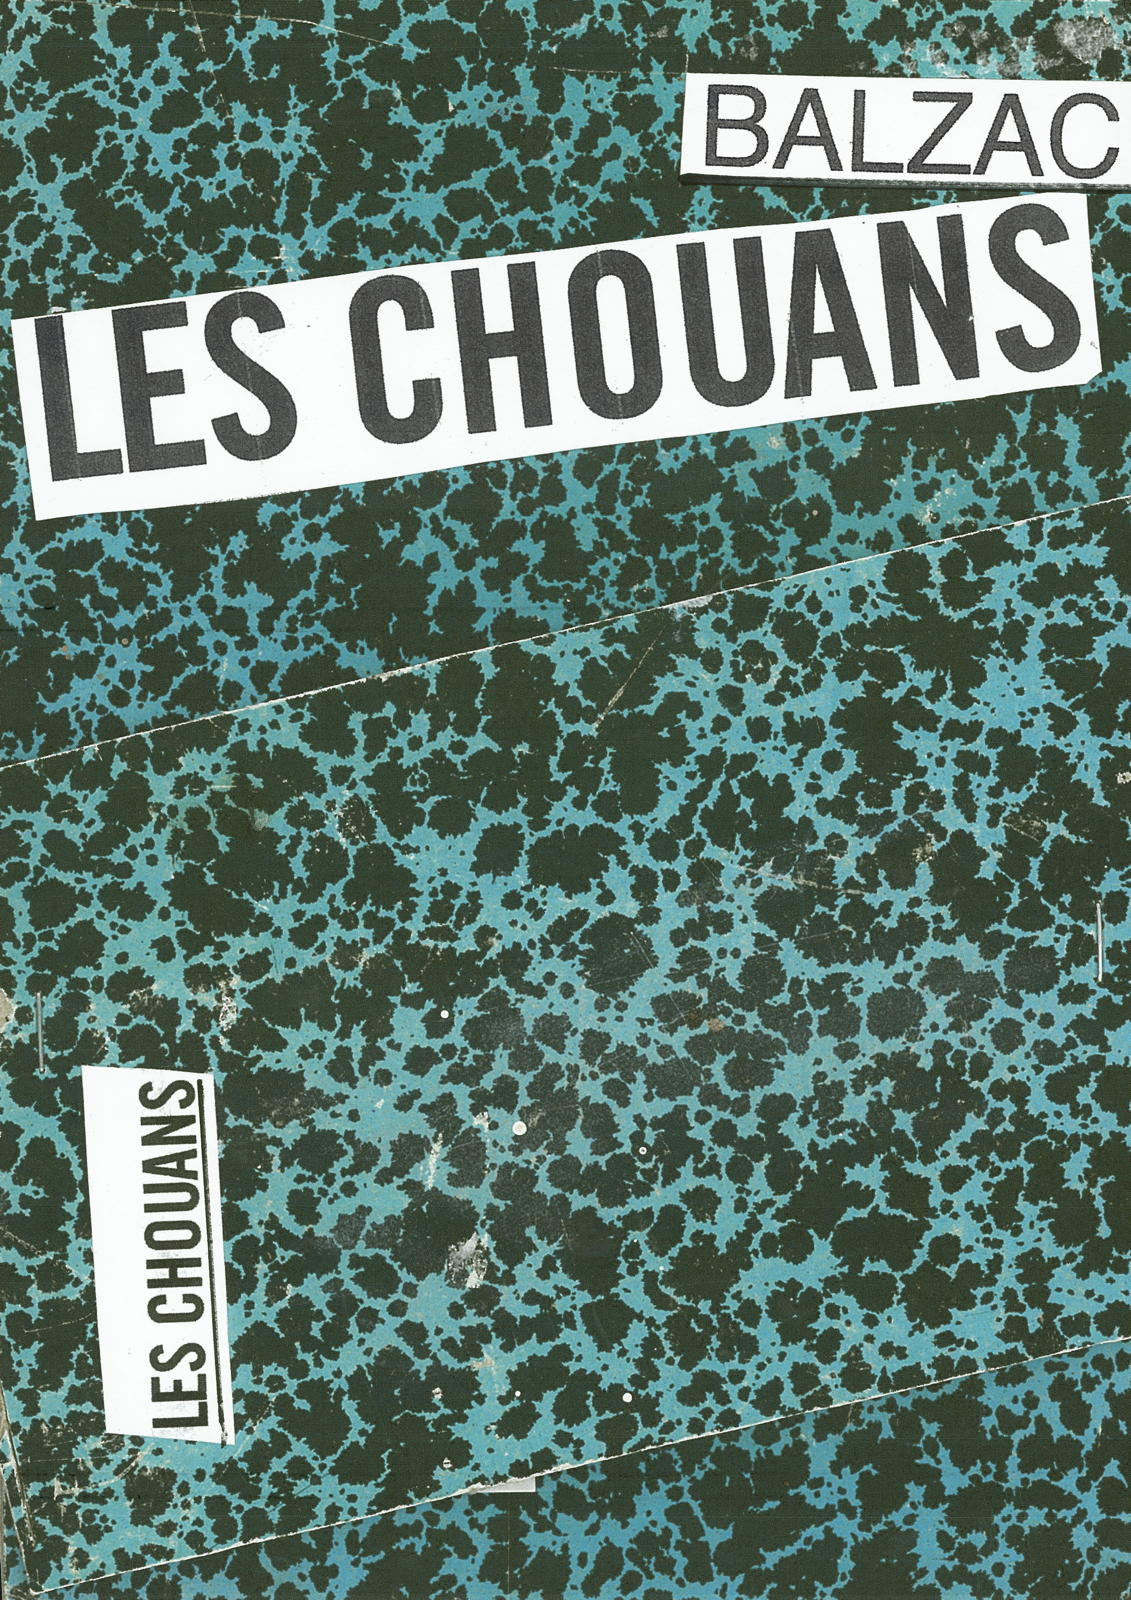 Balzac - Les Chouans, 2021